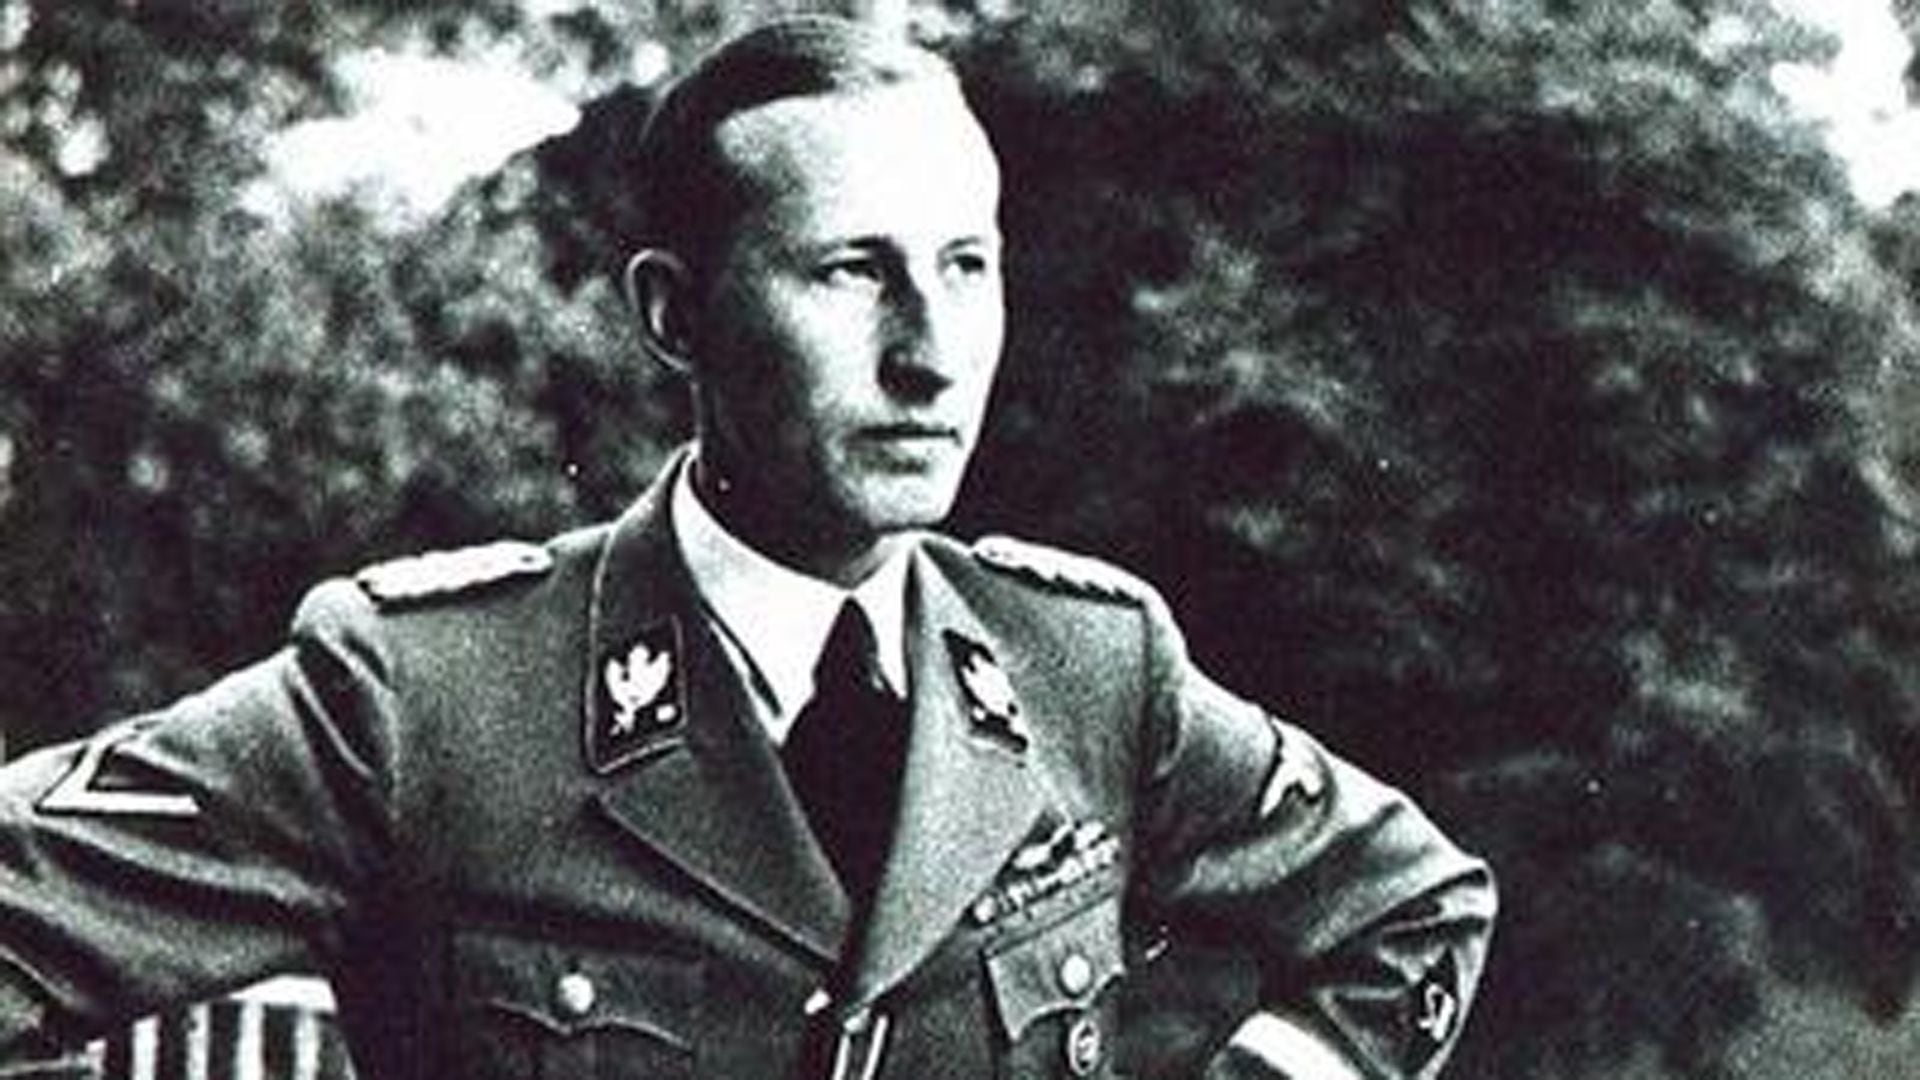 Heydrich escaló muy rápido en el escalafón nazi. Mostró lealtad hacia el líder e impudicia para llevar adelante lo que se le pedía sin importar el daño que podría causar.